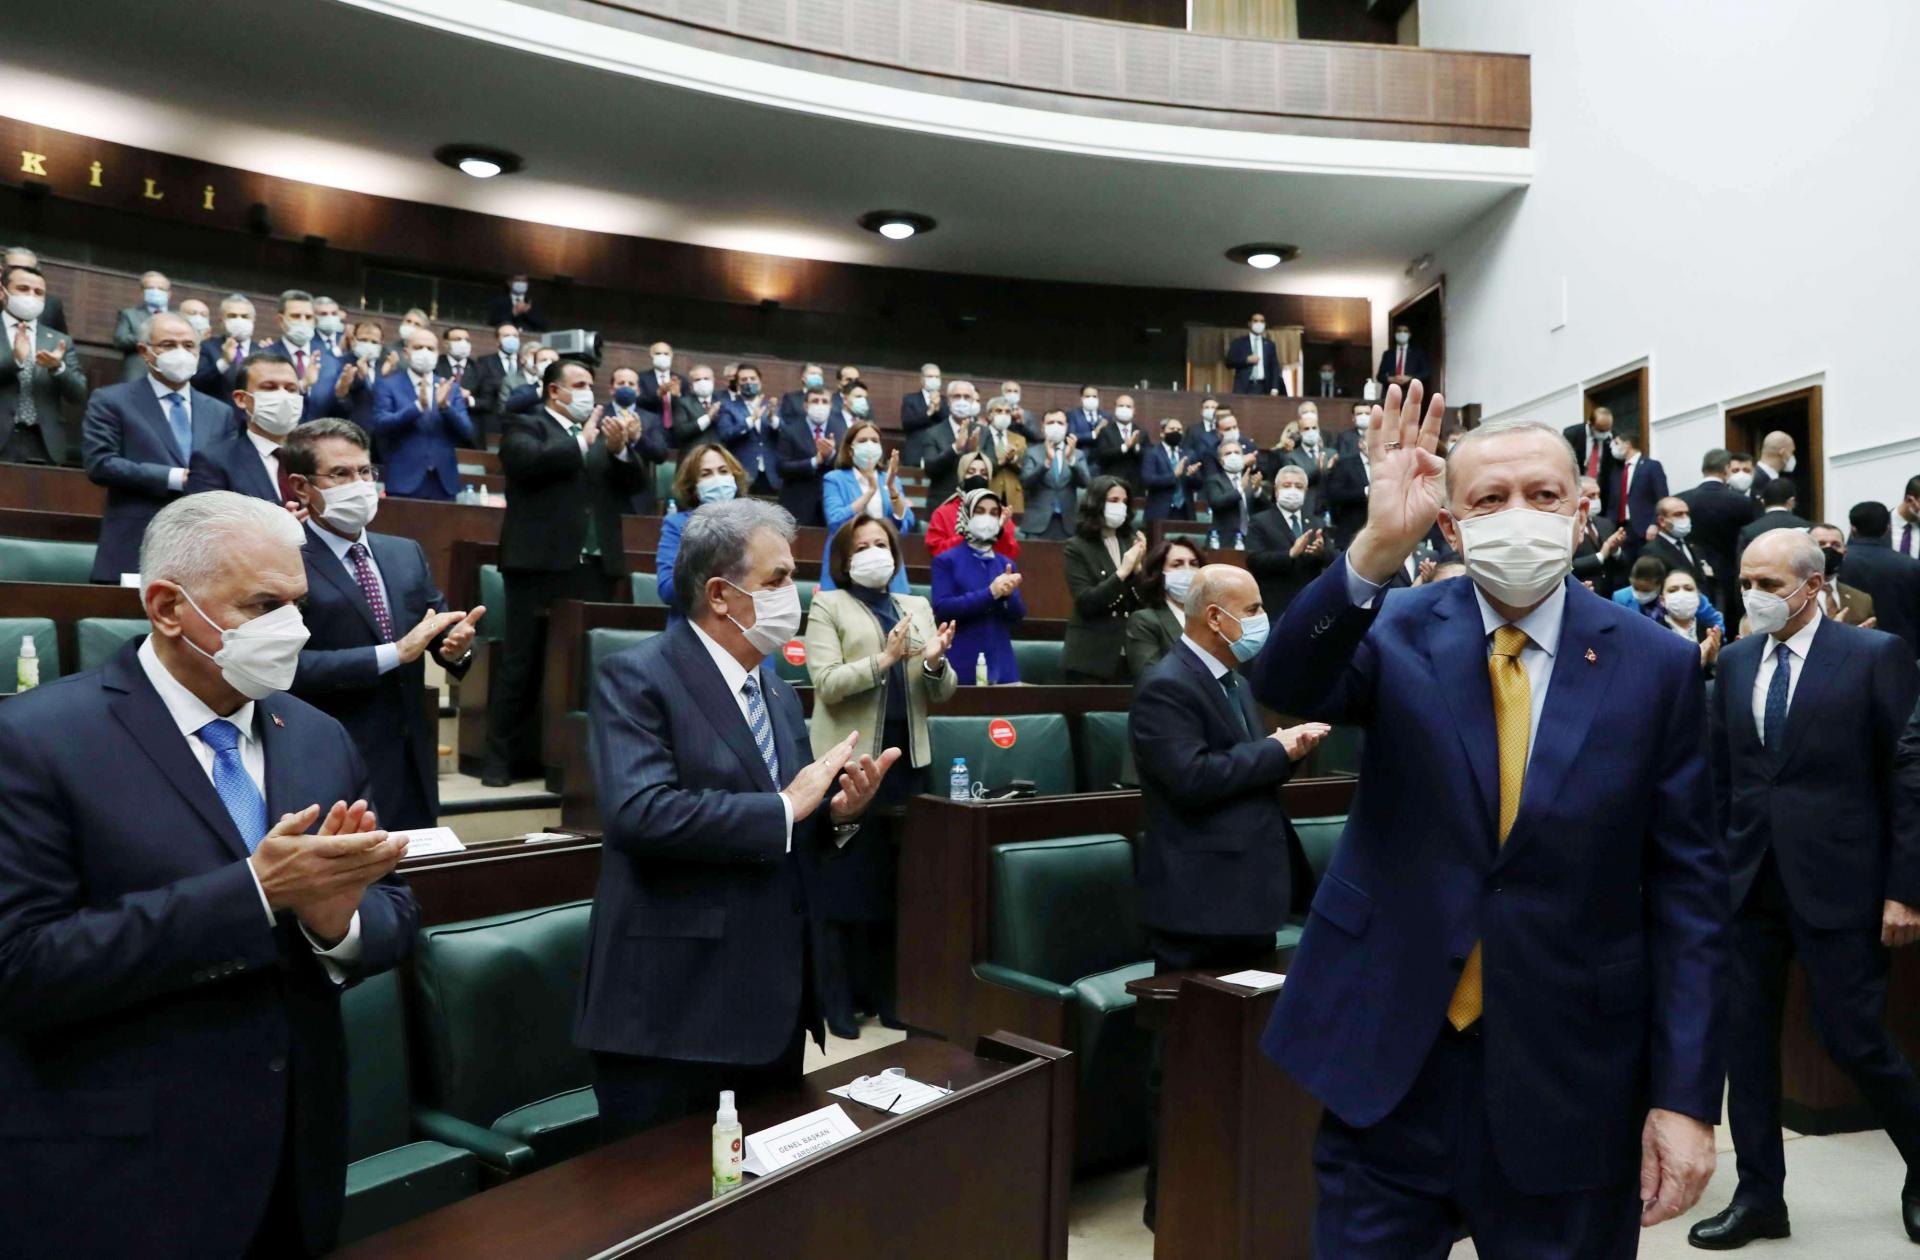 الرئيس التركي رجب طيب إردوغان يحيي أعضاء حزبه خلال اجتماع بالبرلمان